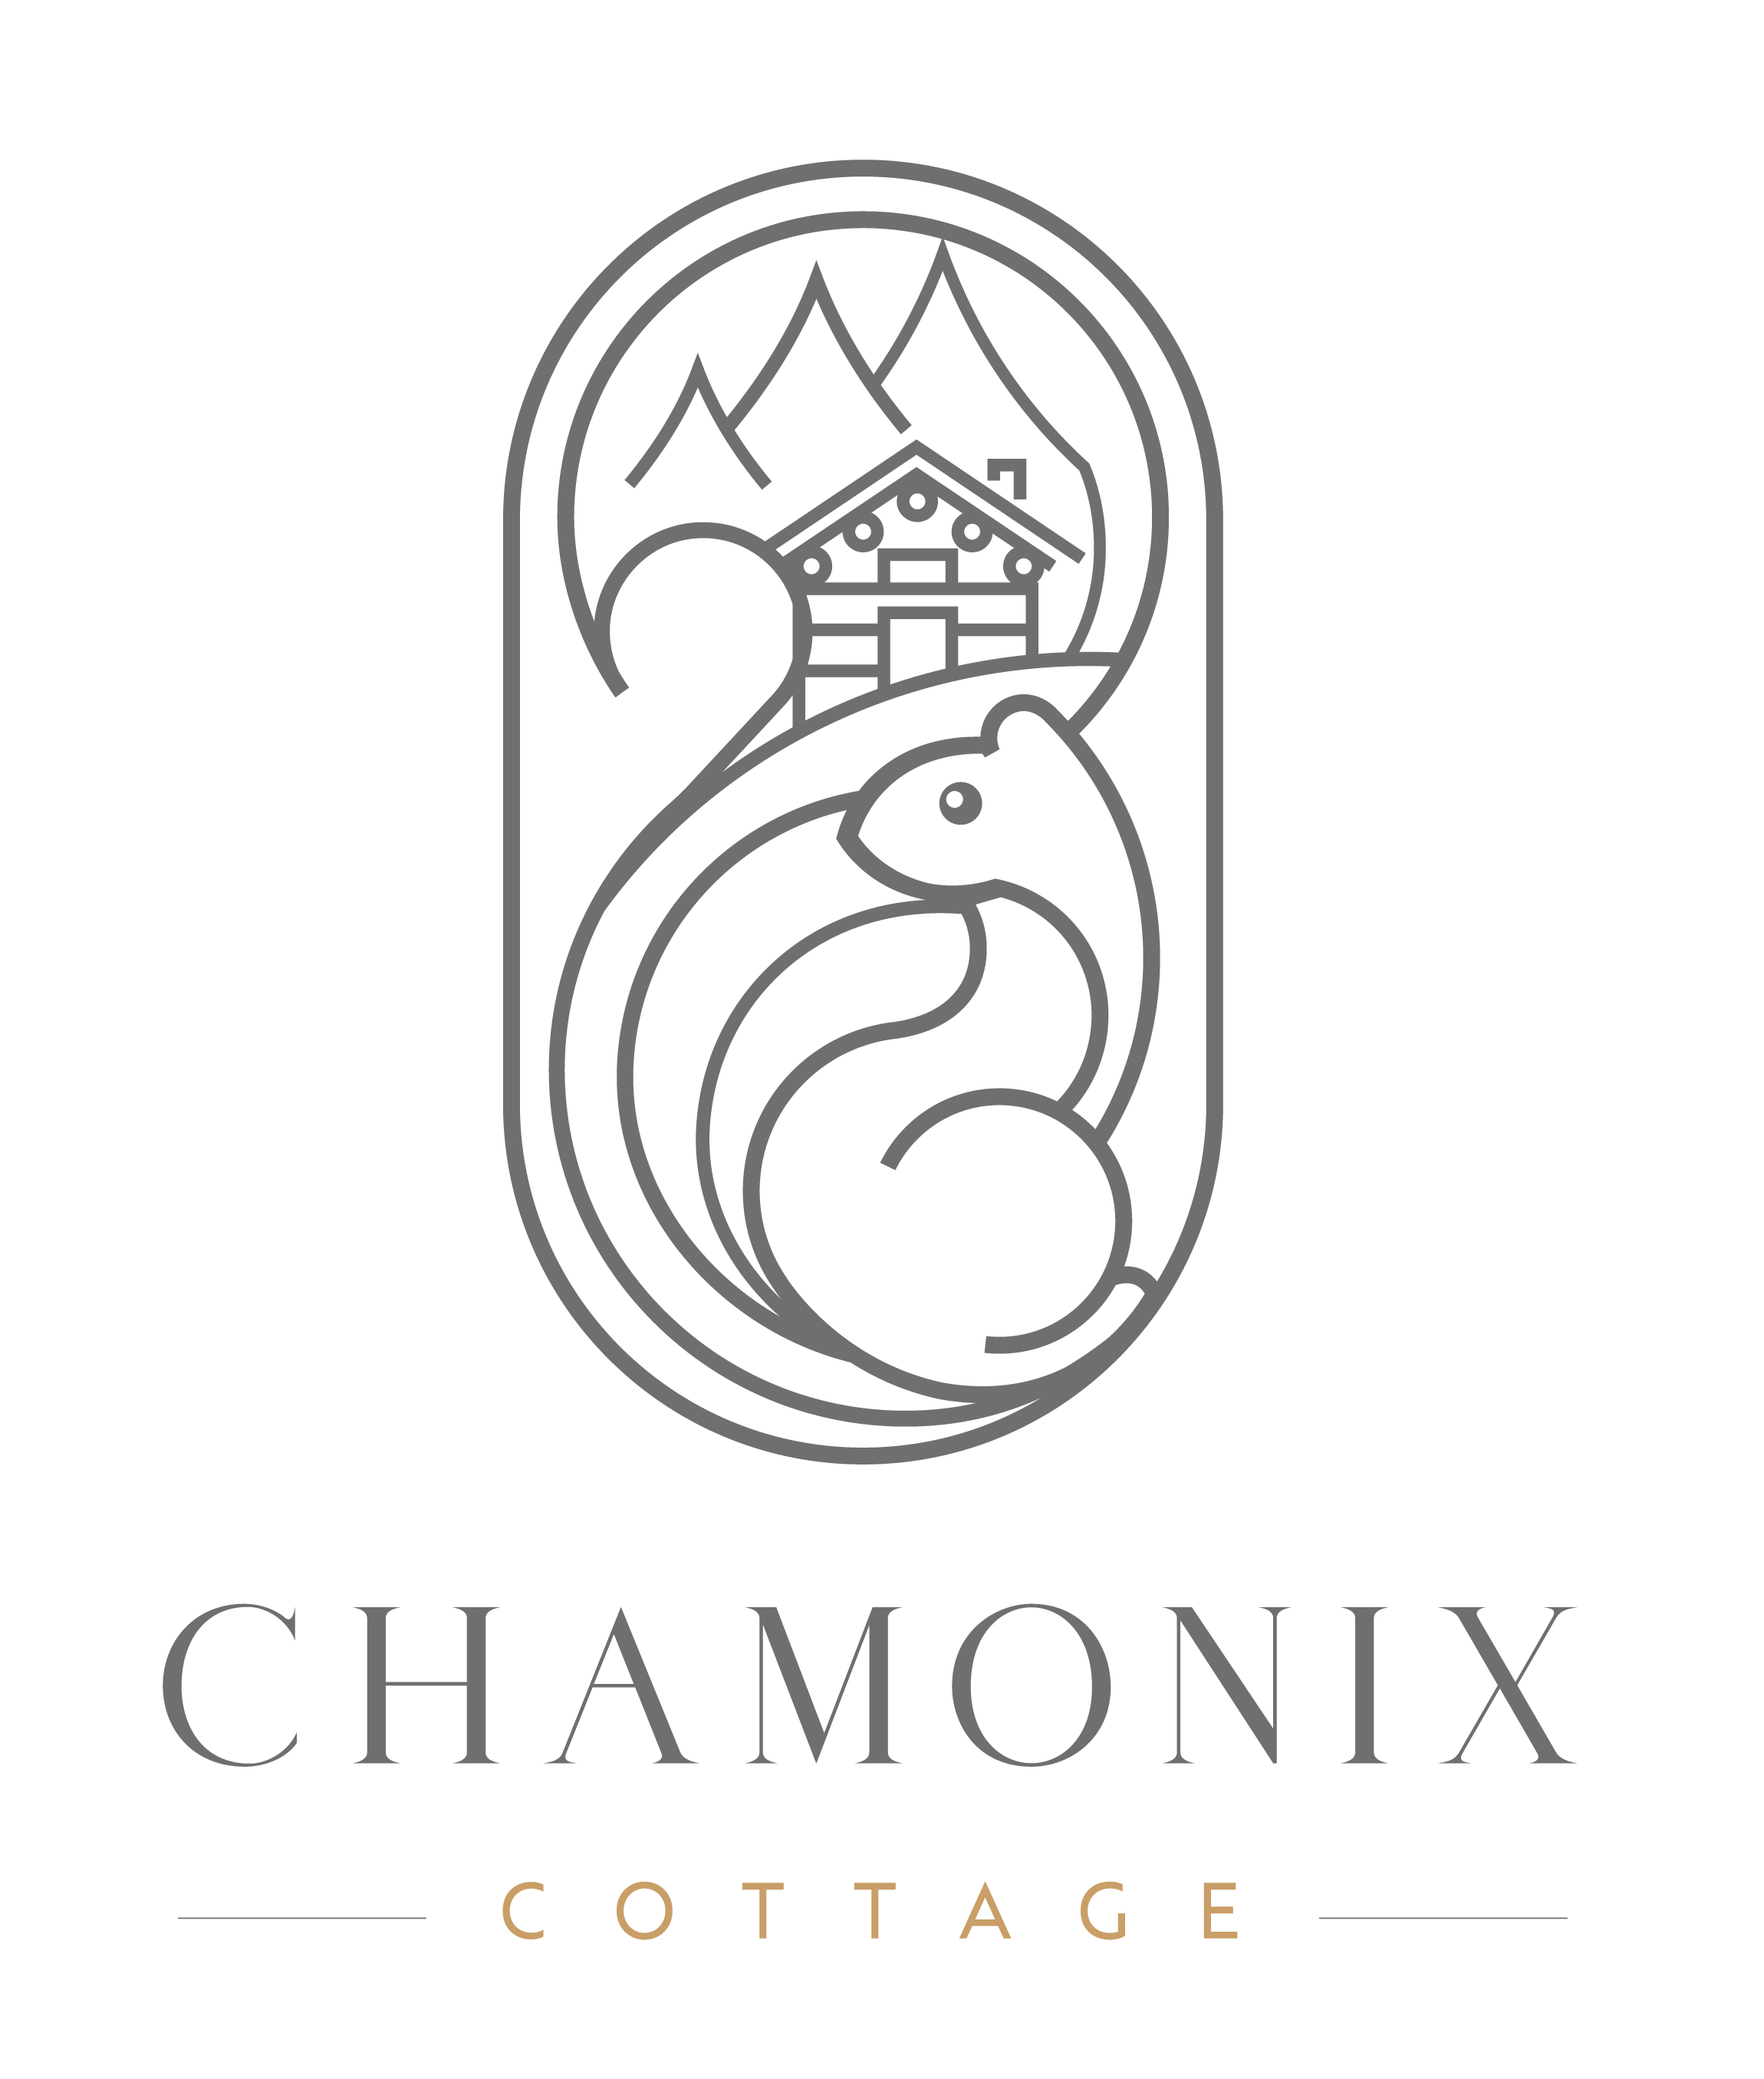 Chamonix Cottage | Non classé - Chamonix Cottage